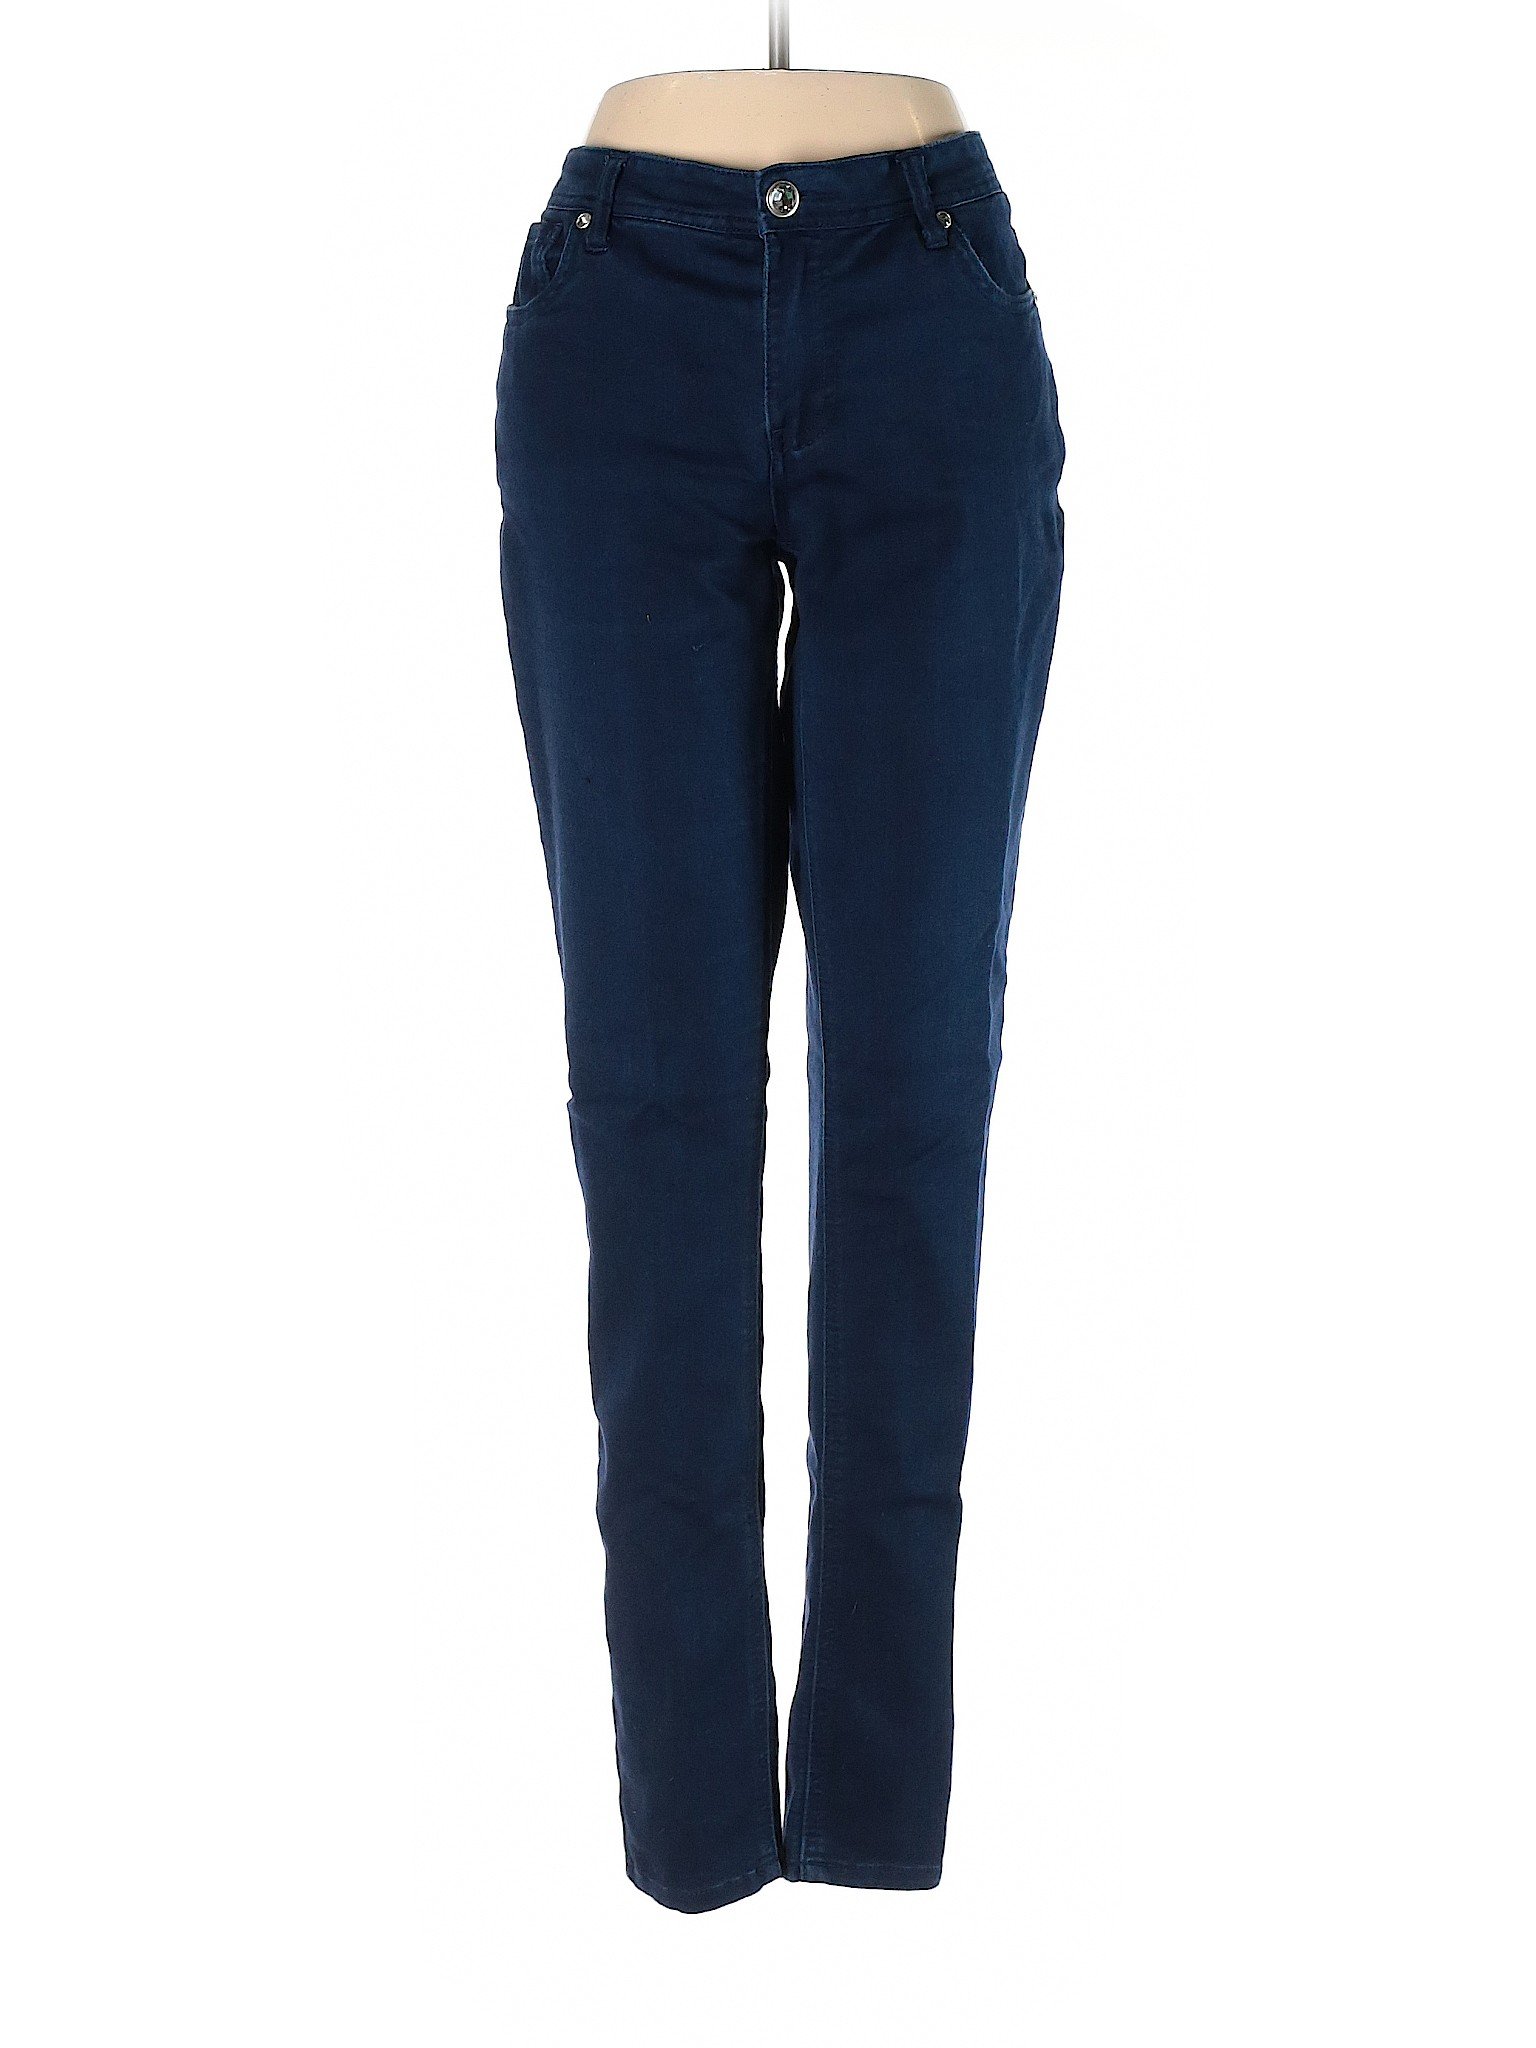 Baccini Women Blue Jeans 8 | eBay